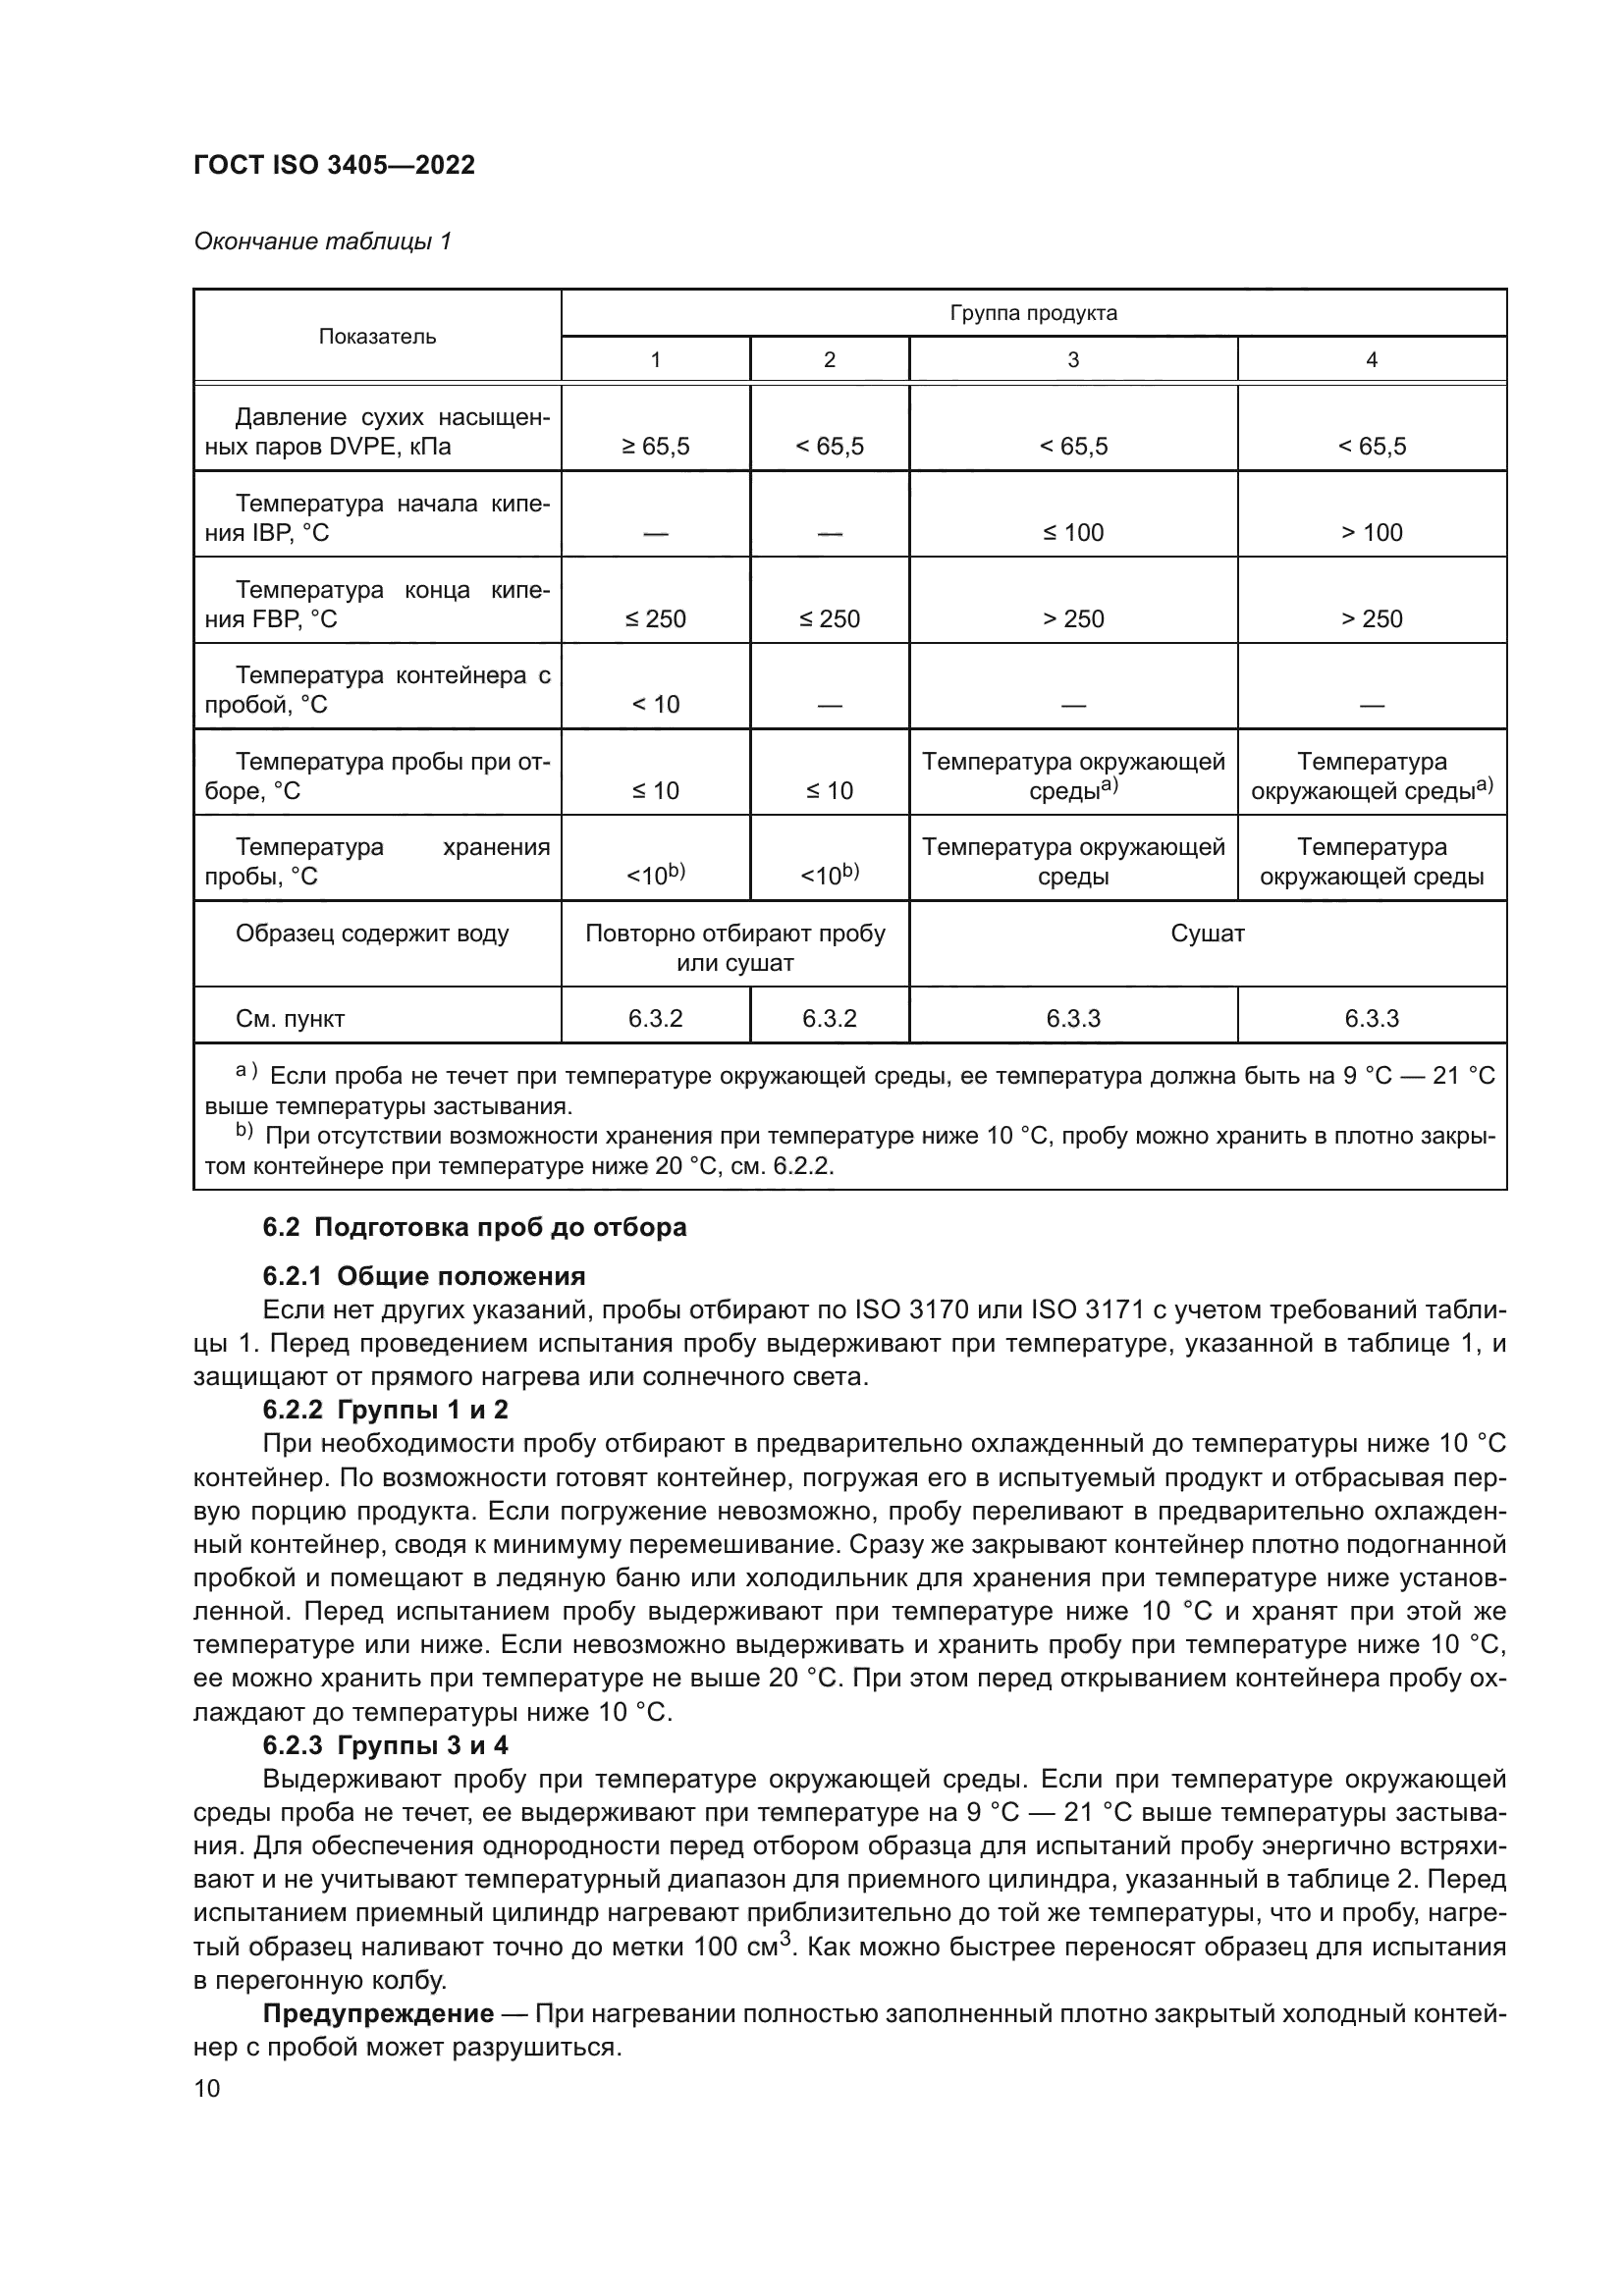 ГОСТ ISO 3405-2022